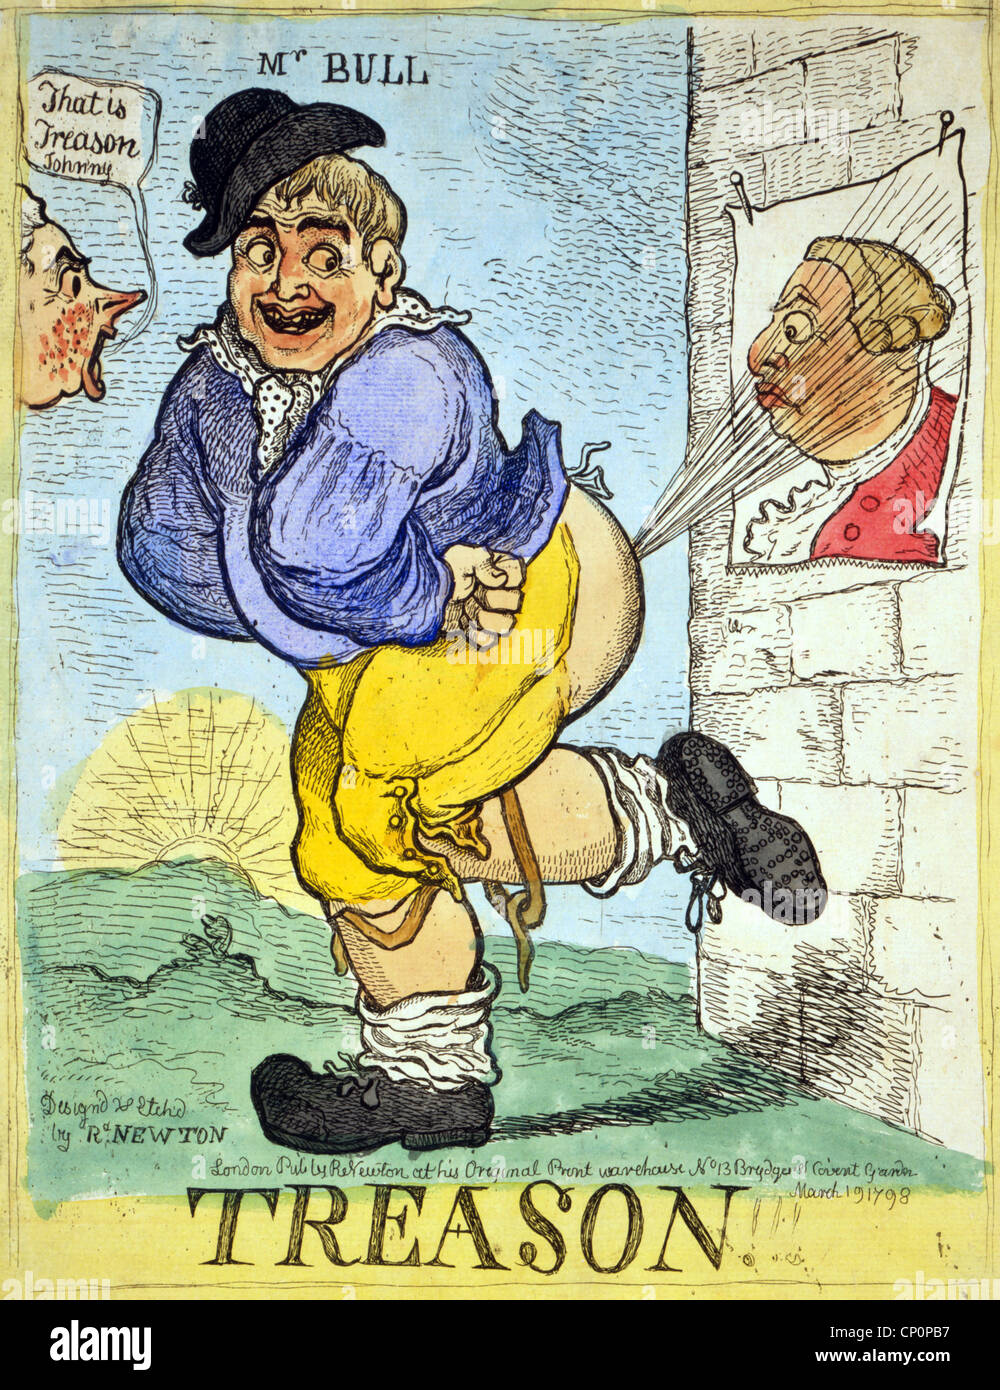 Verrat!!! Ein Stout, John Bull lächelnd leitet eine Explosion aus seinem Auffahrunfall auf ein Poster von König George III an die Wand geheftet. Stockfoto